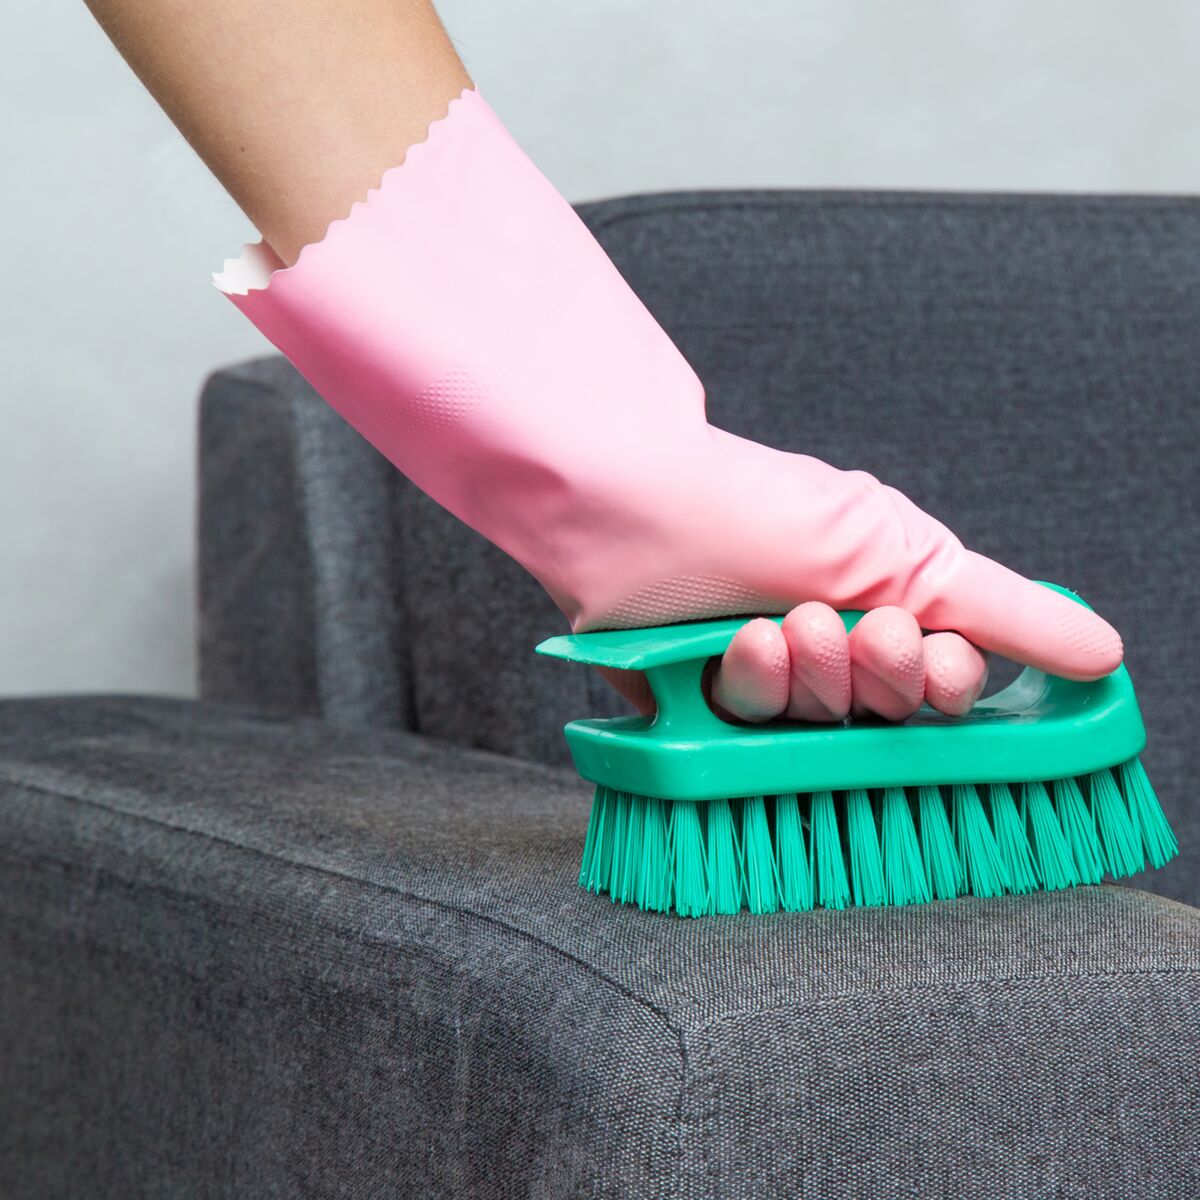 Les erreurs à ne plus faire pour nettoyer son canapé en tissu efficacement  : Femme Actuelle Le MAG